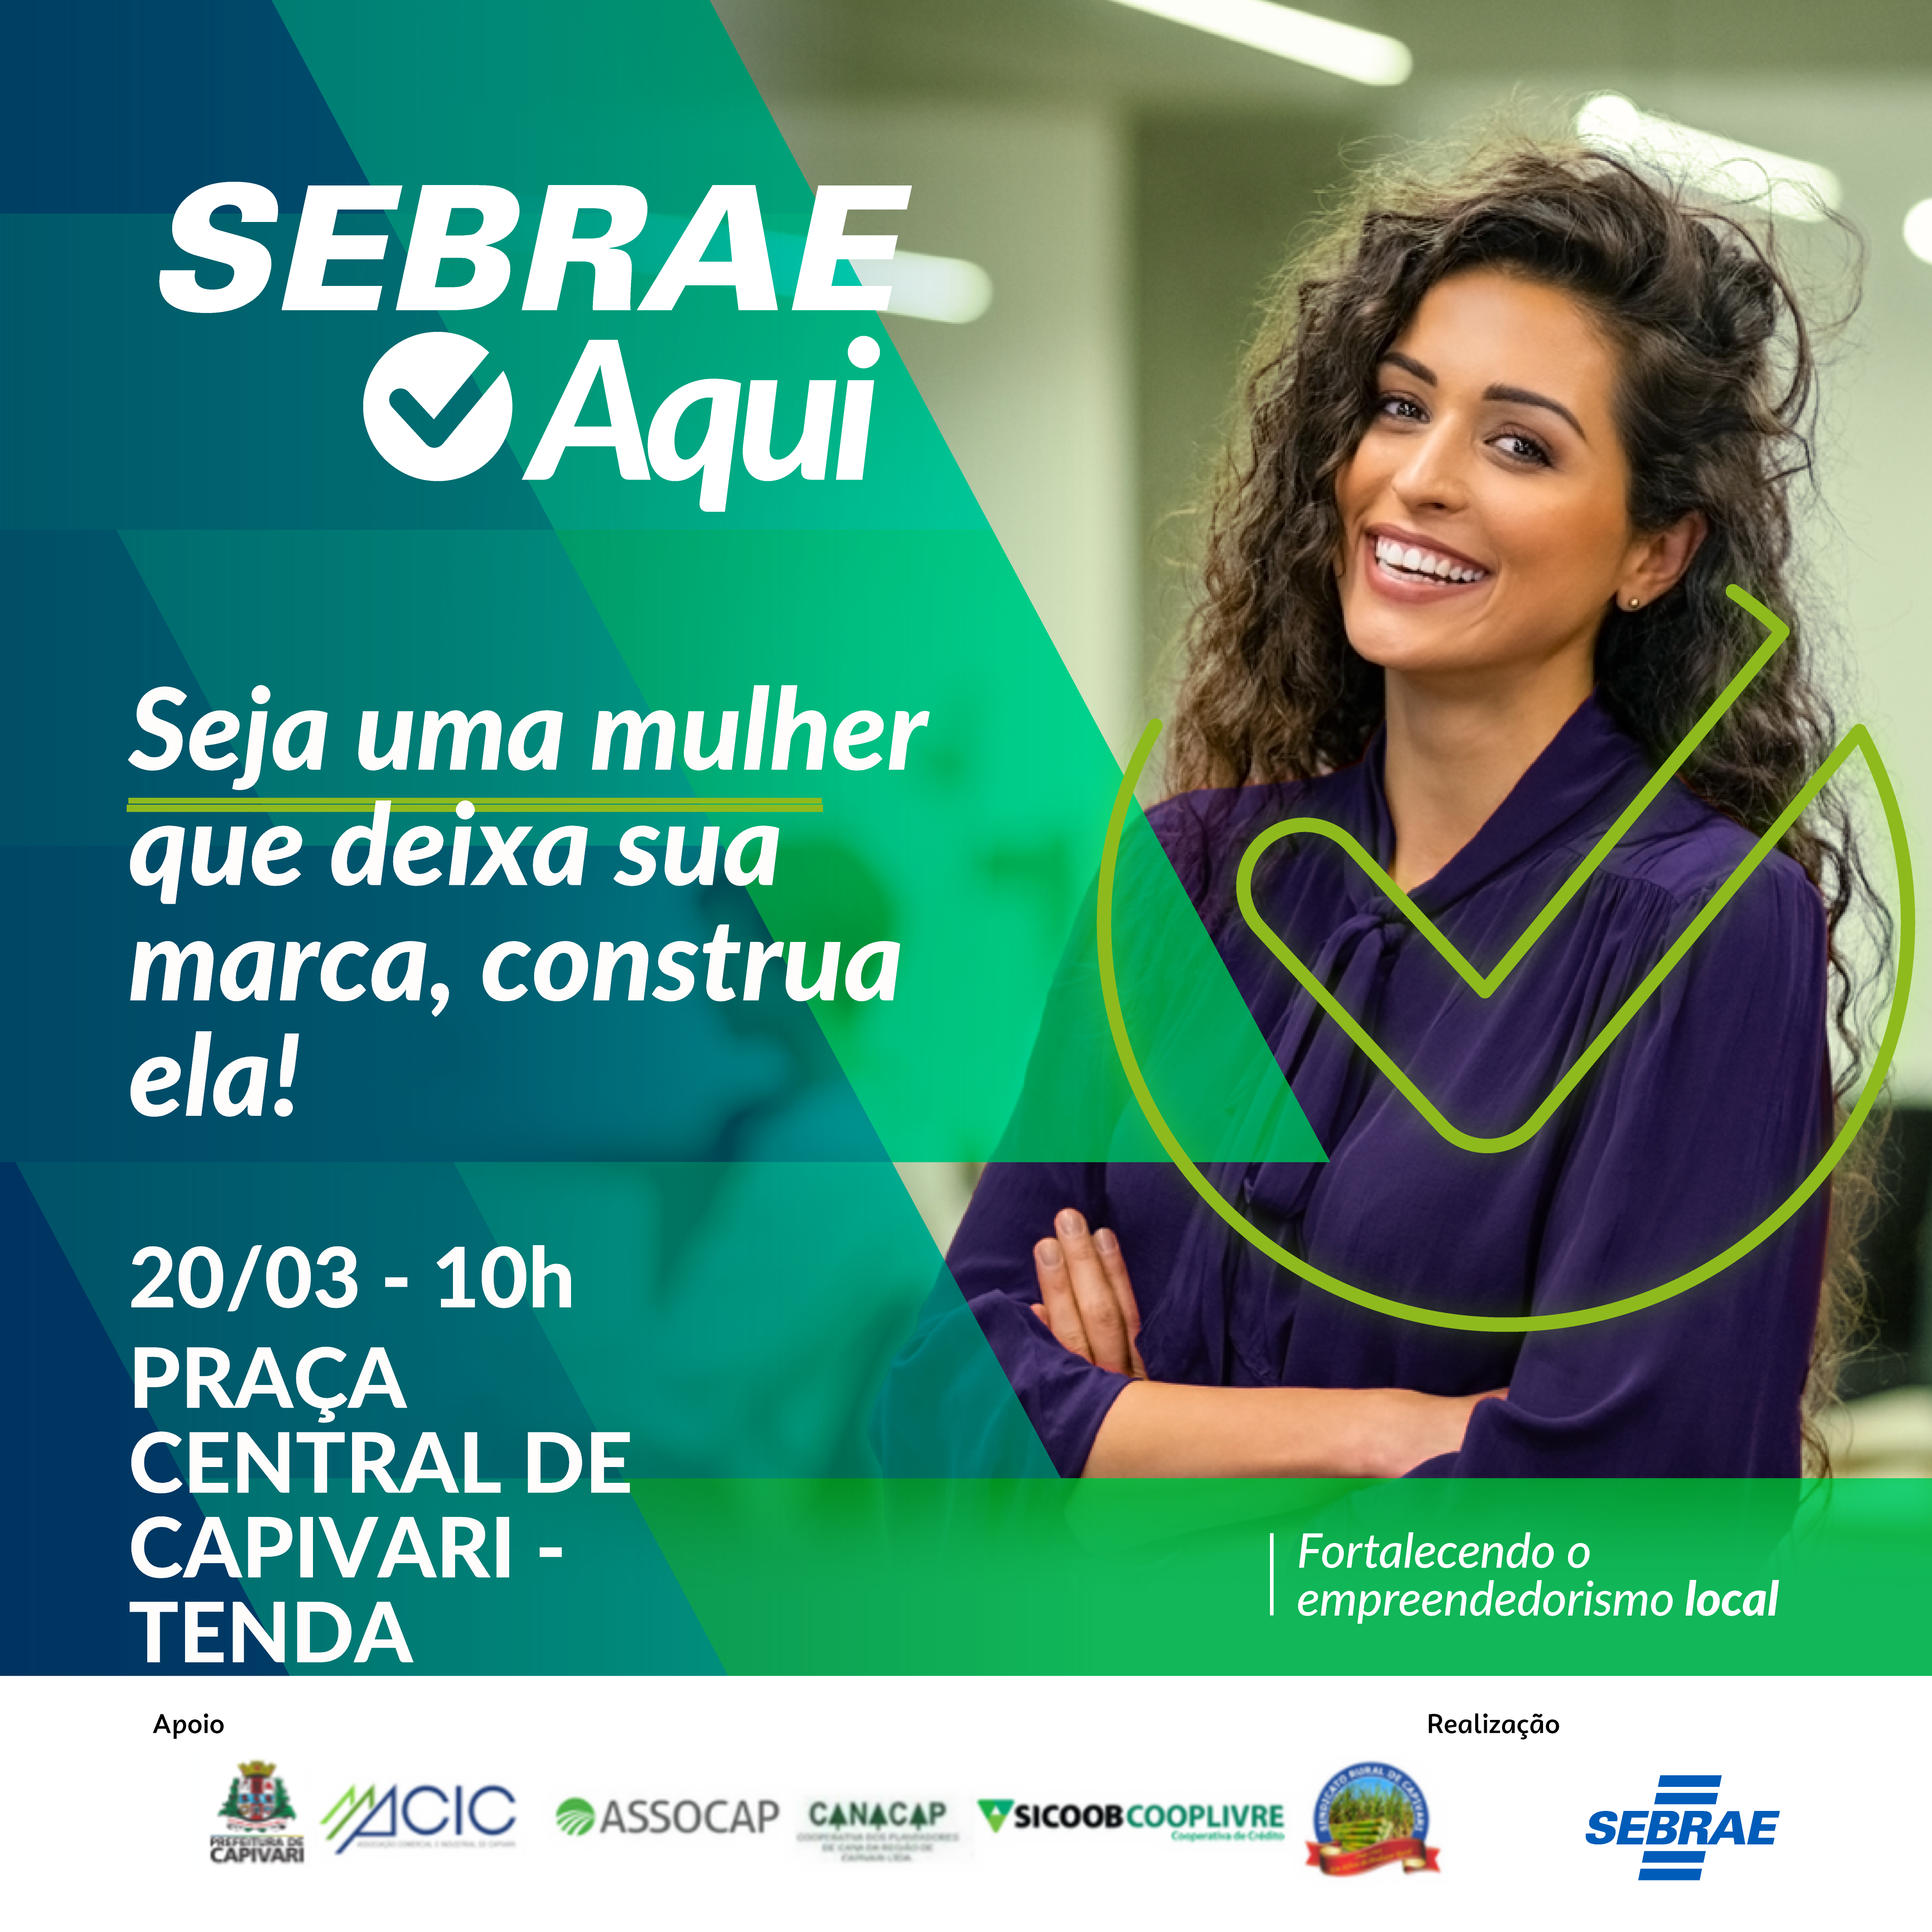 Em homenagem ao mês das mulheres, SebraeAqui Capivari disponibiliza palestra exclusiva para o público feminino